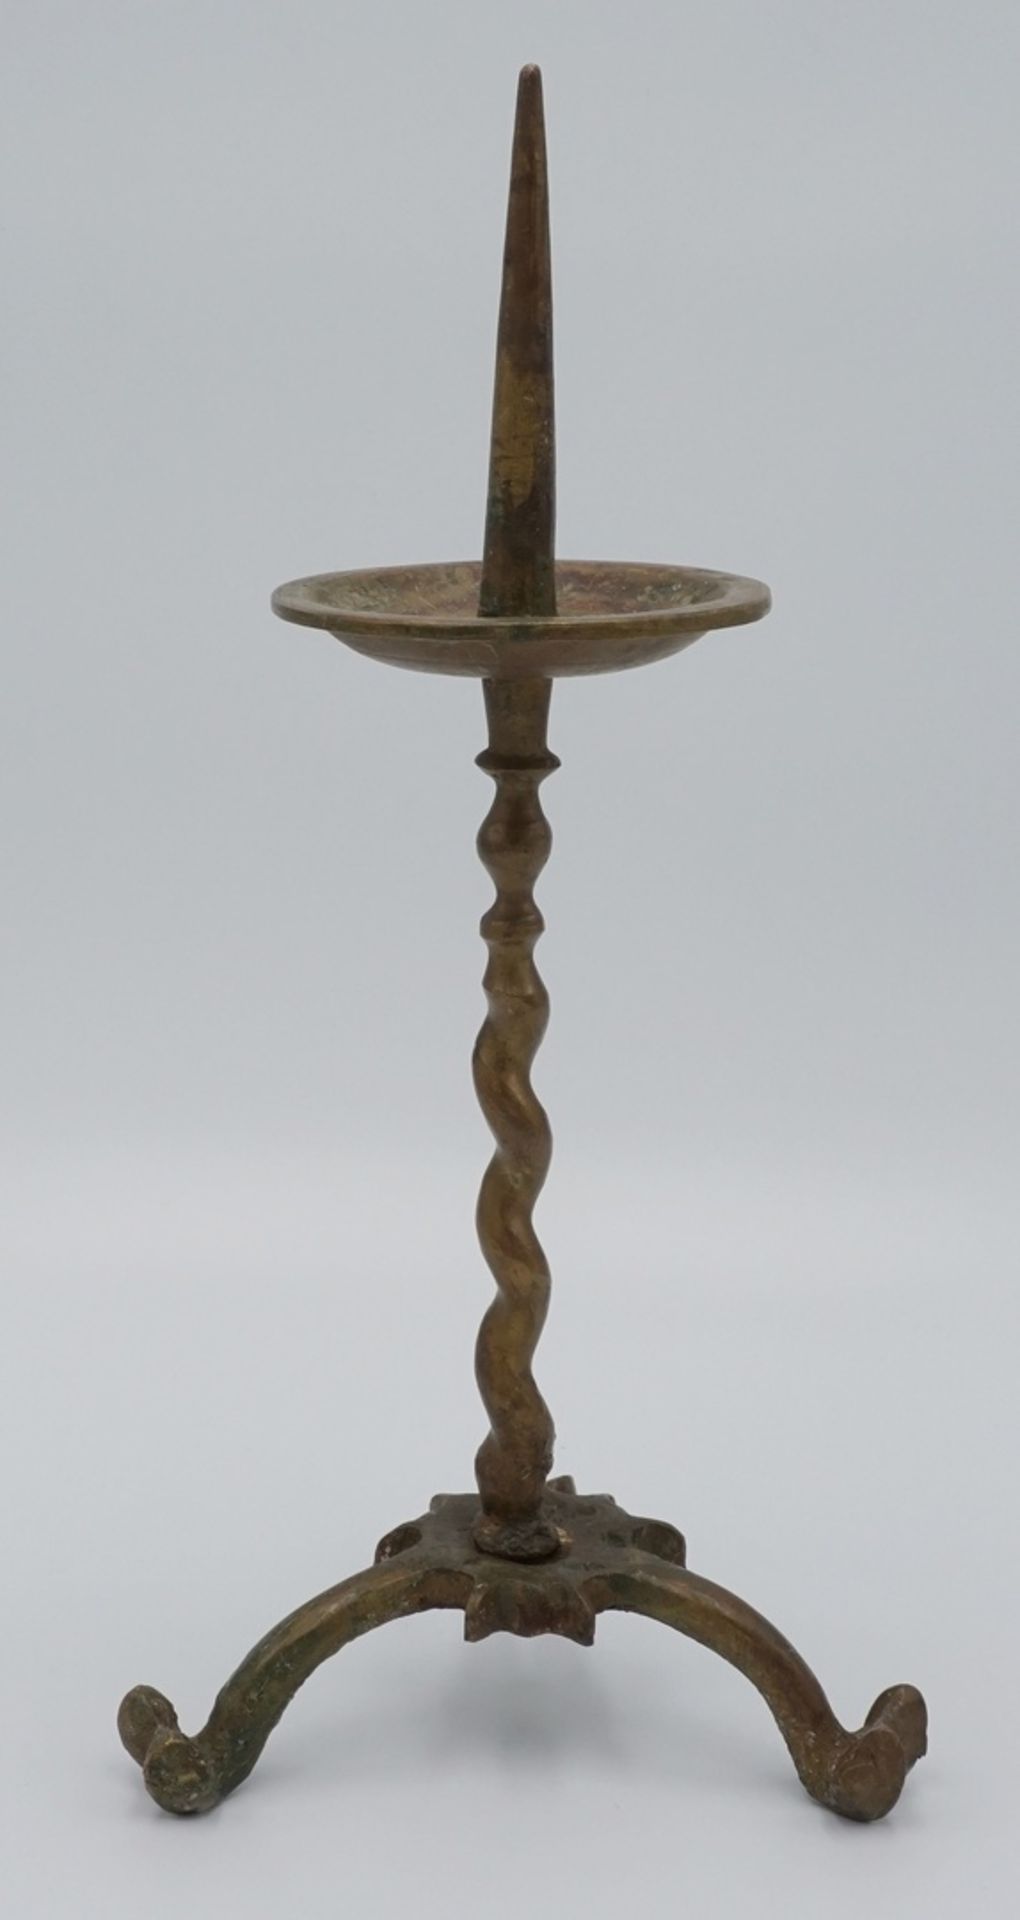 Standleuchter mit Dorn, wohl 16. Jh.Bronze, auf drei Füßen stehender Kerzenständer, mit in sich